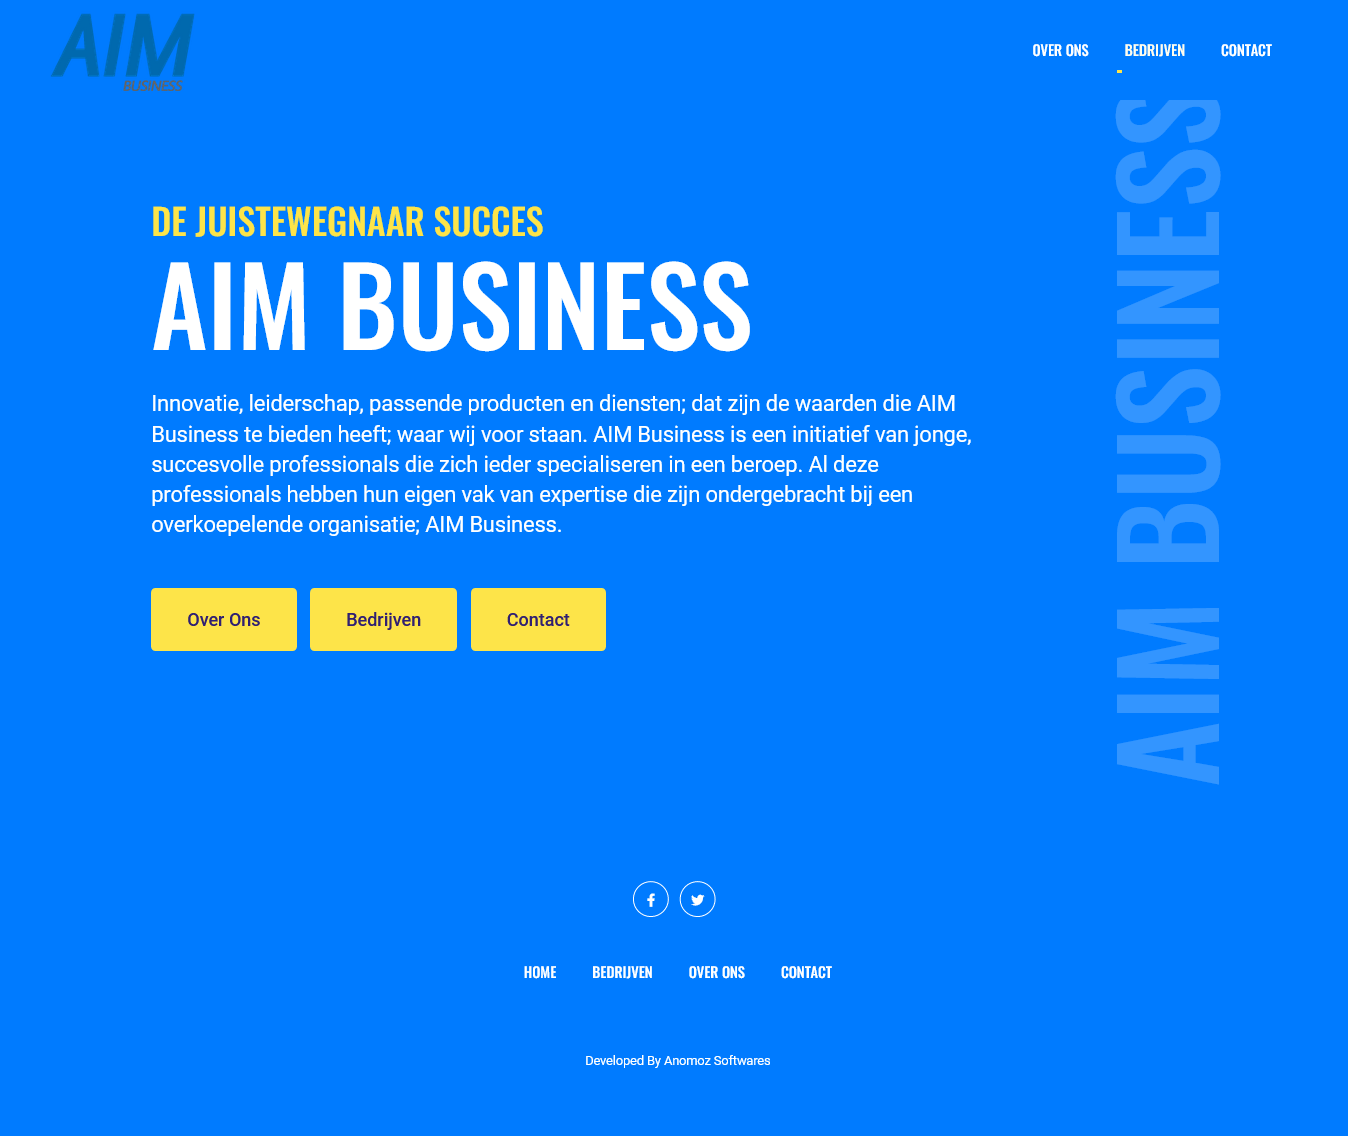  Business Aim - Anomoz Softwares